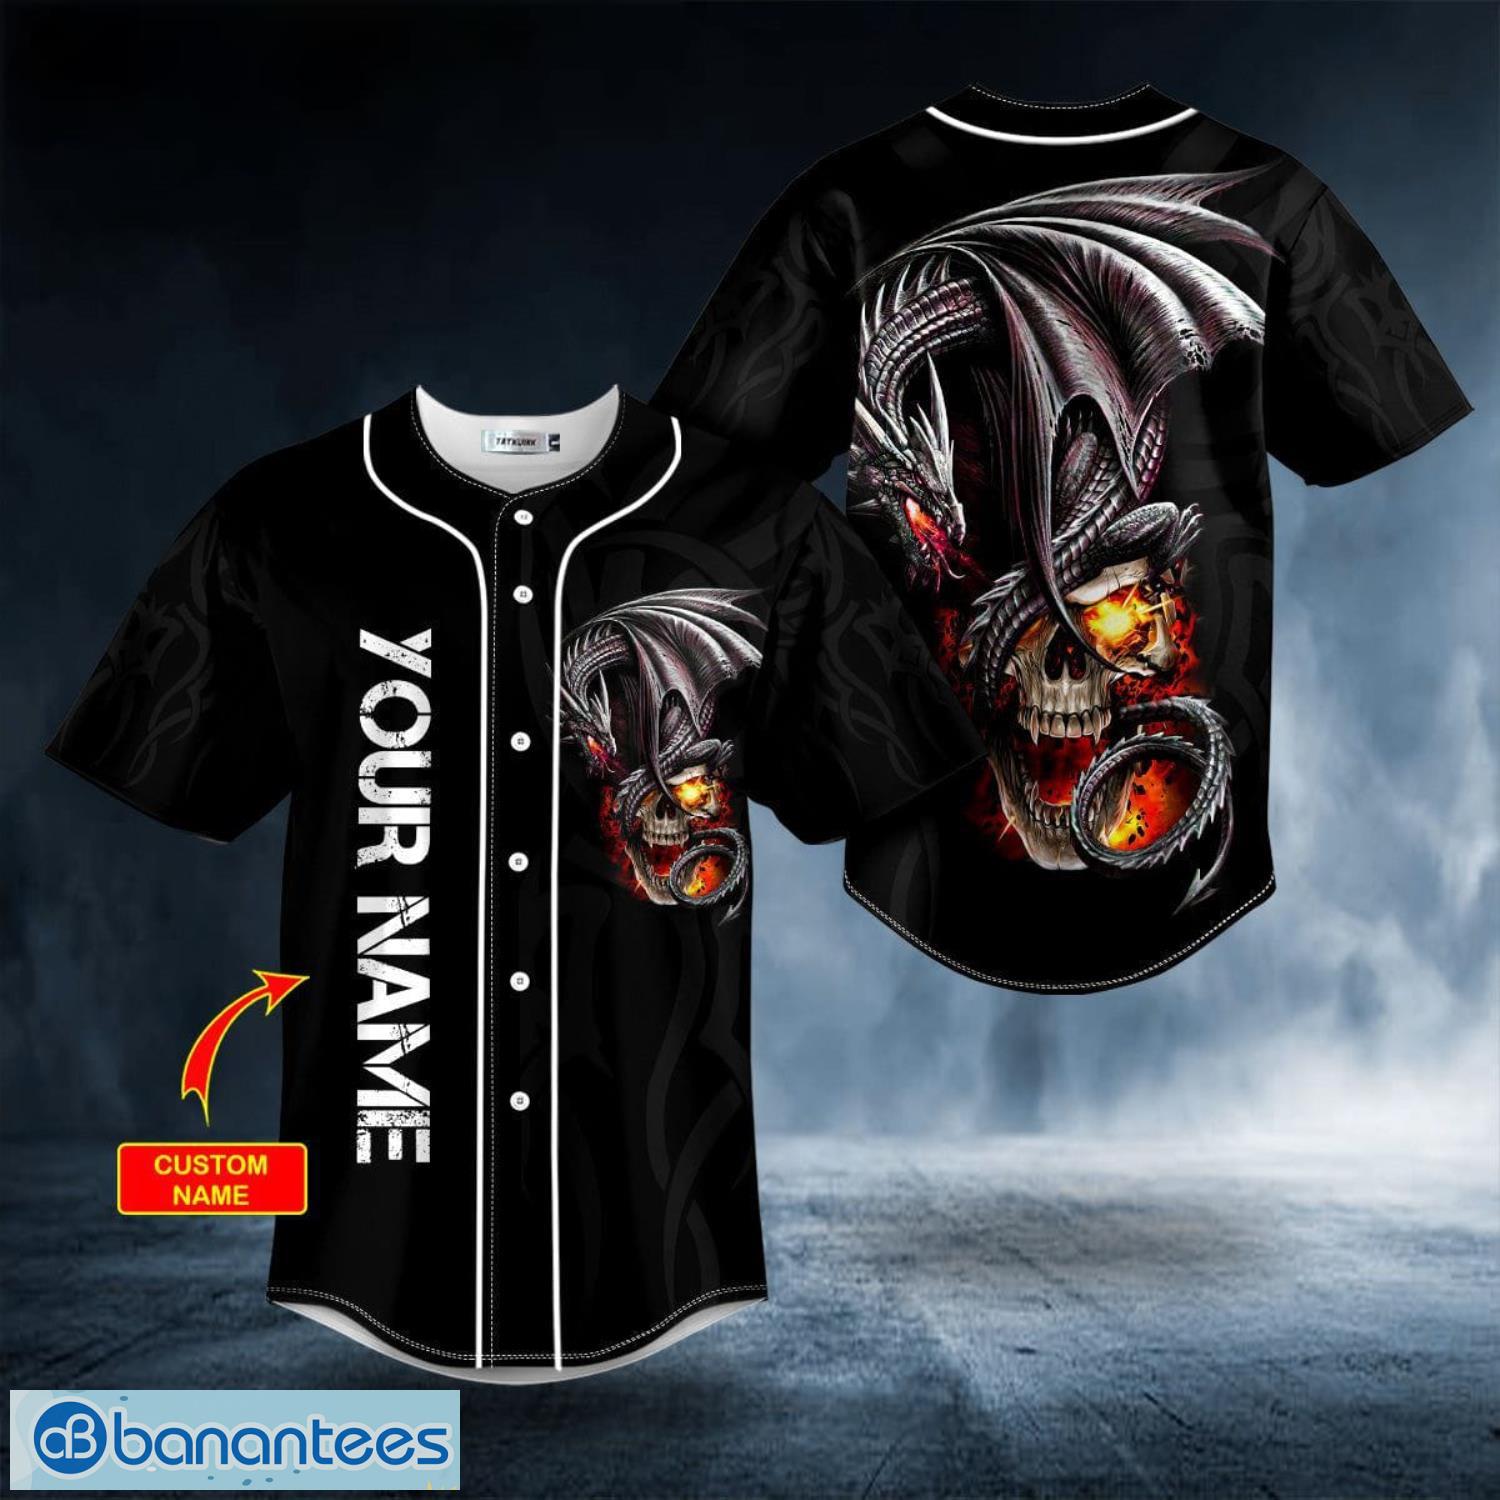 Black Gothic Dragon Fire Skull Custom Name All Over Print Baseball